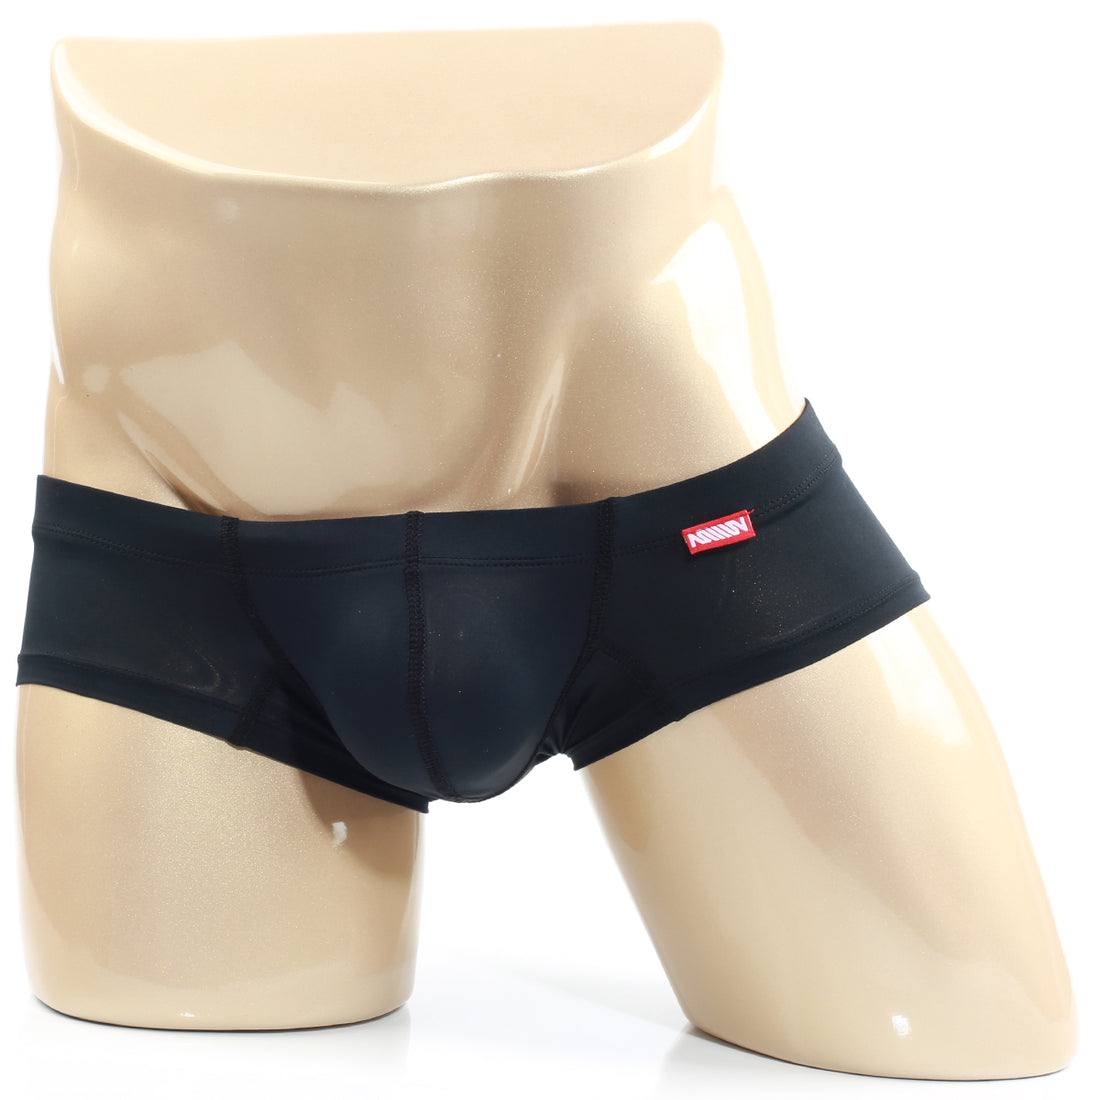 C-IN2 Underwear starting at $9.99 – Underwear News Briefs